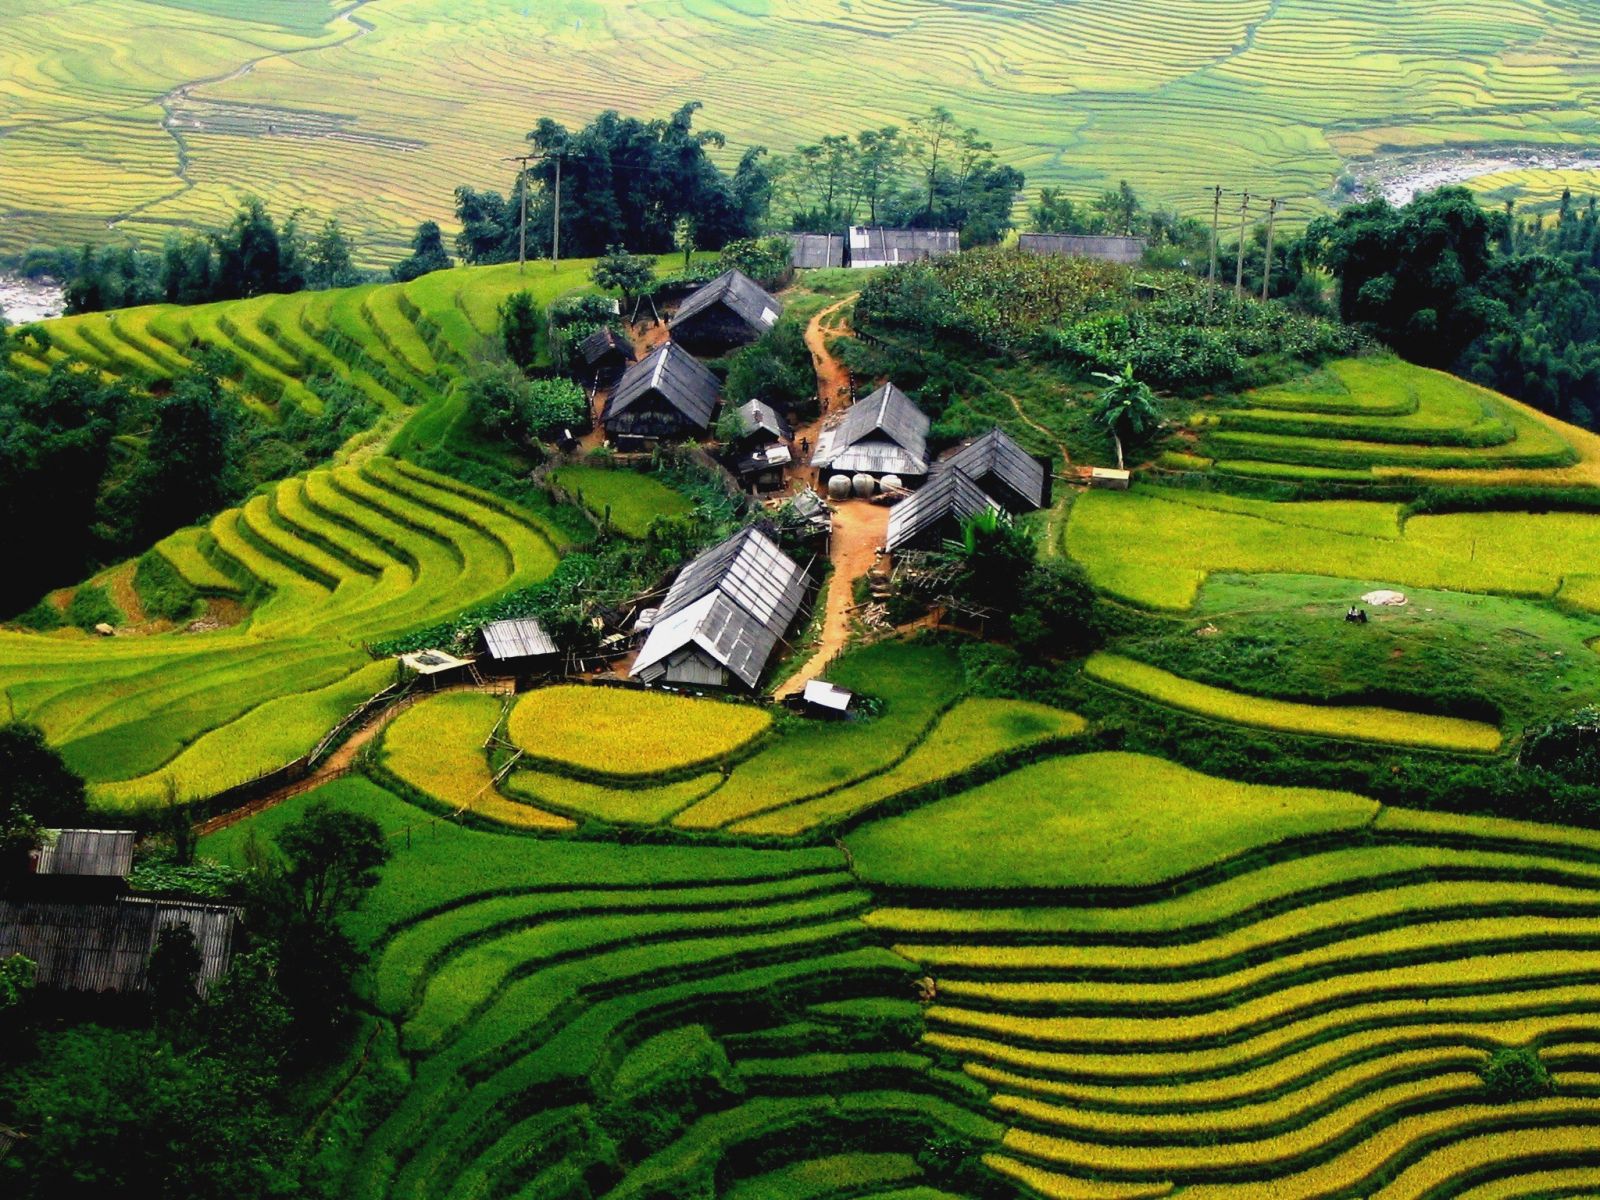 Source: Vietnam Famous Destinations